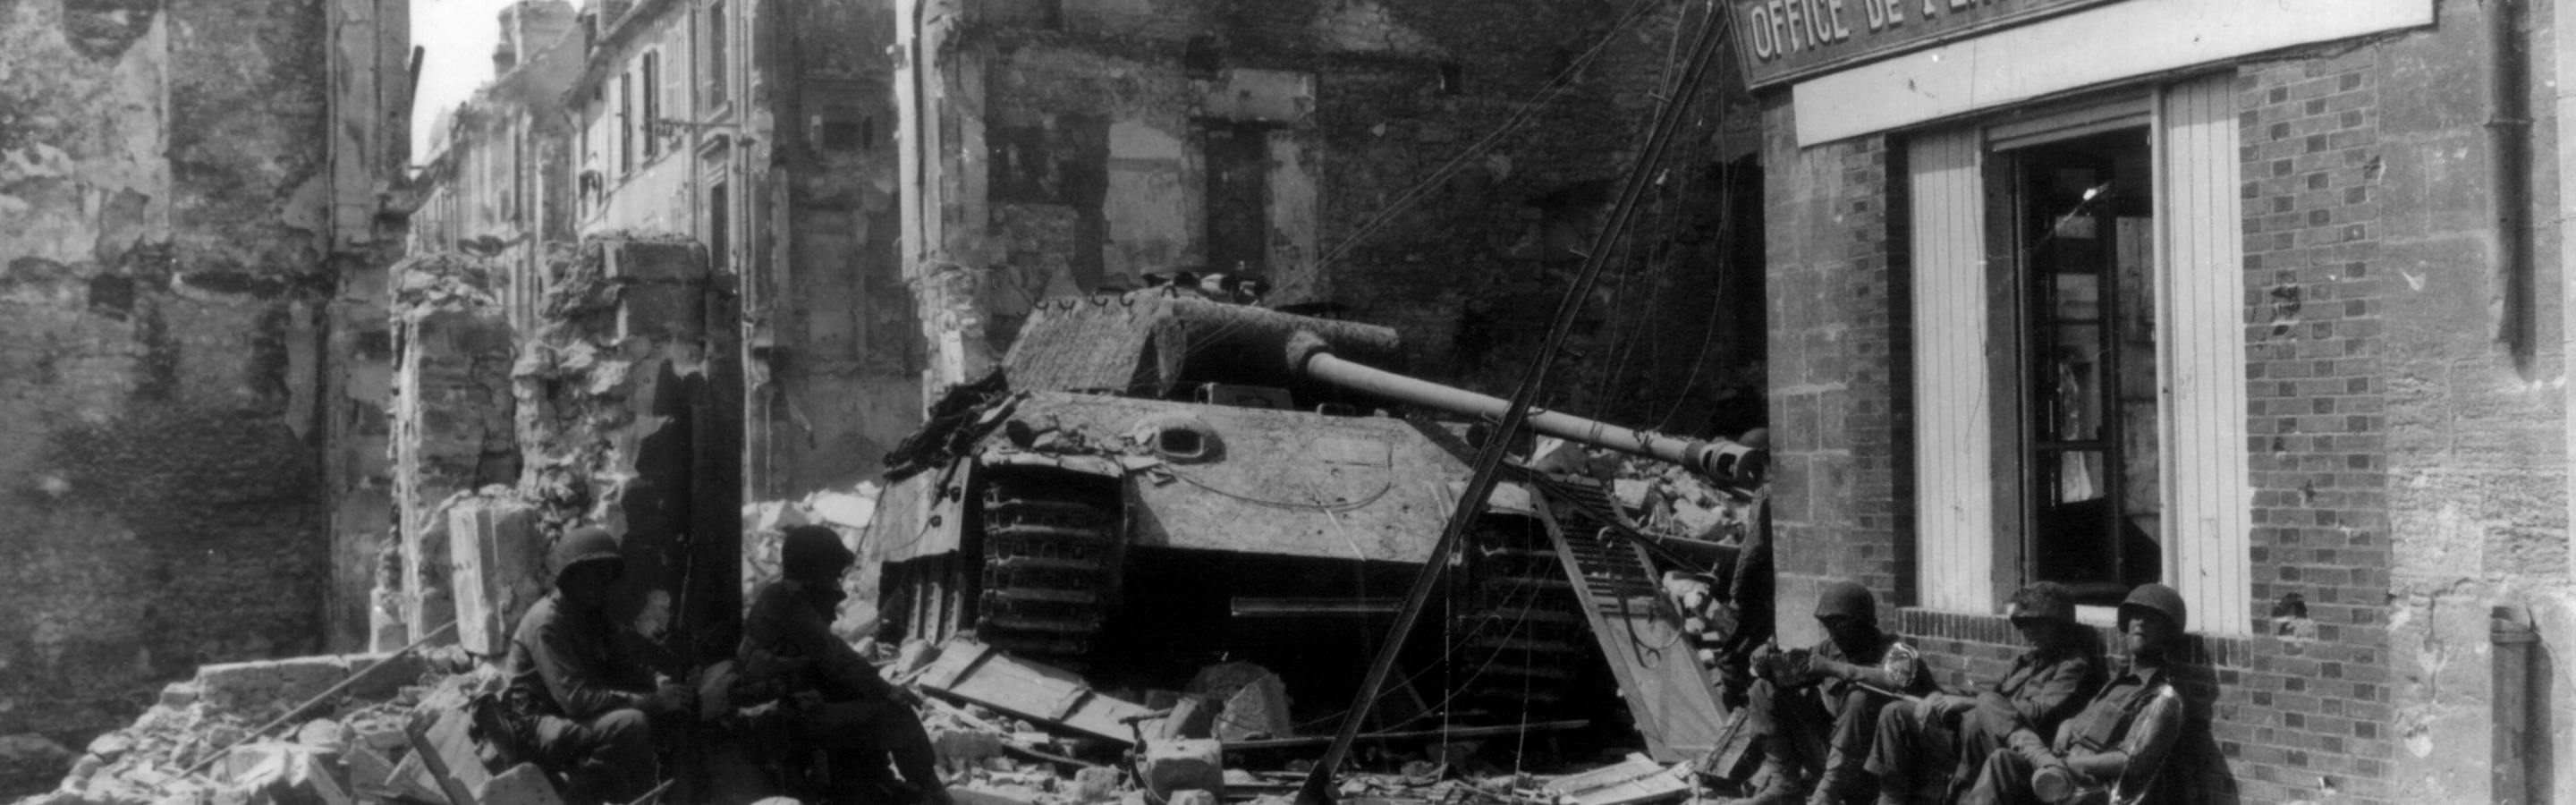 Франция 1944. Руины Франции 1944. Европа входит в войну